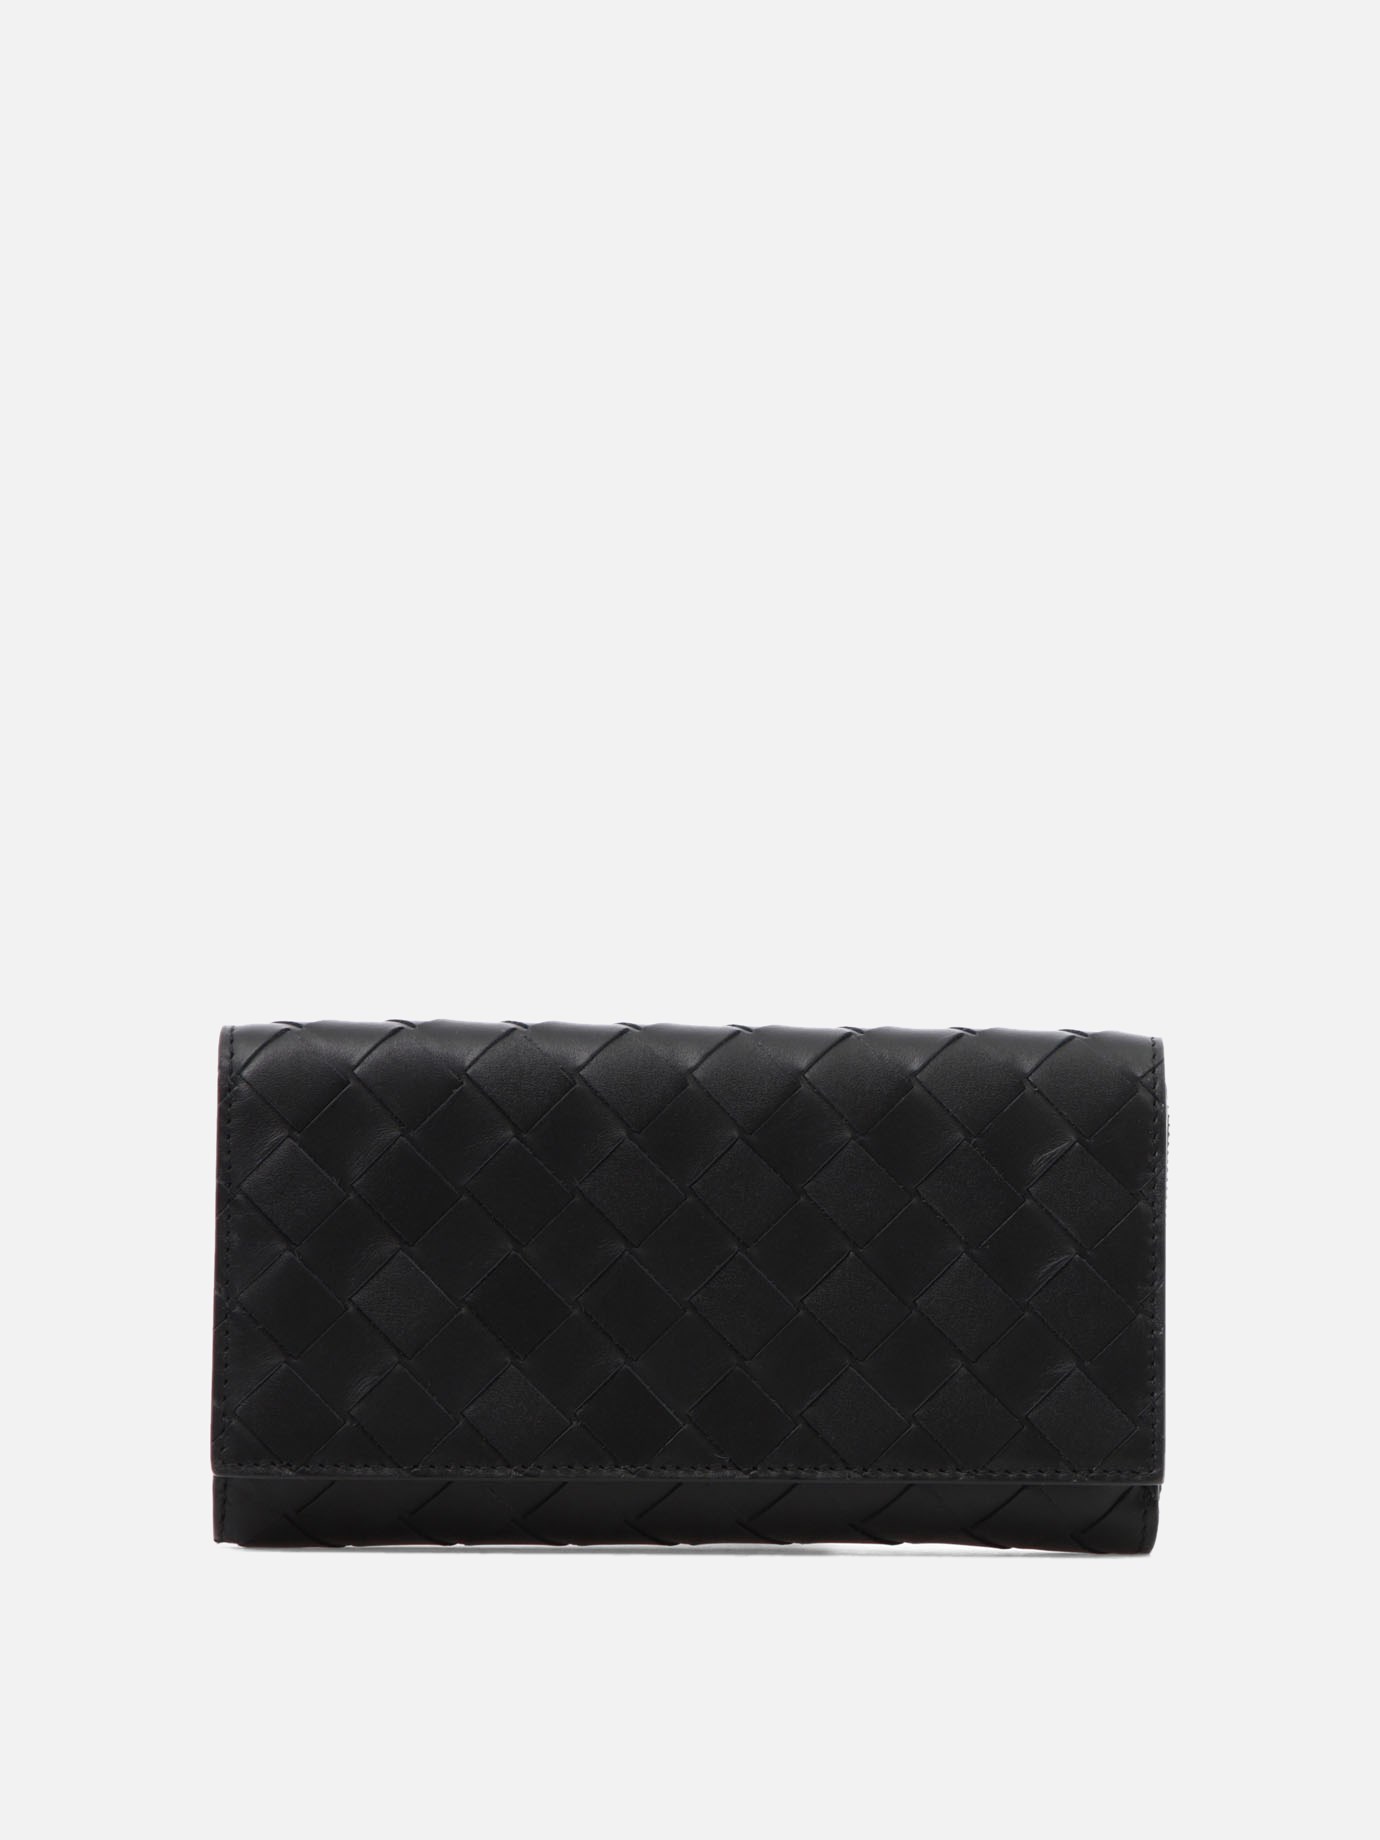 Woven leather walletby Bottega Veneta - 0